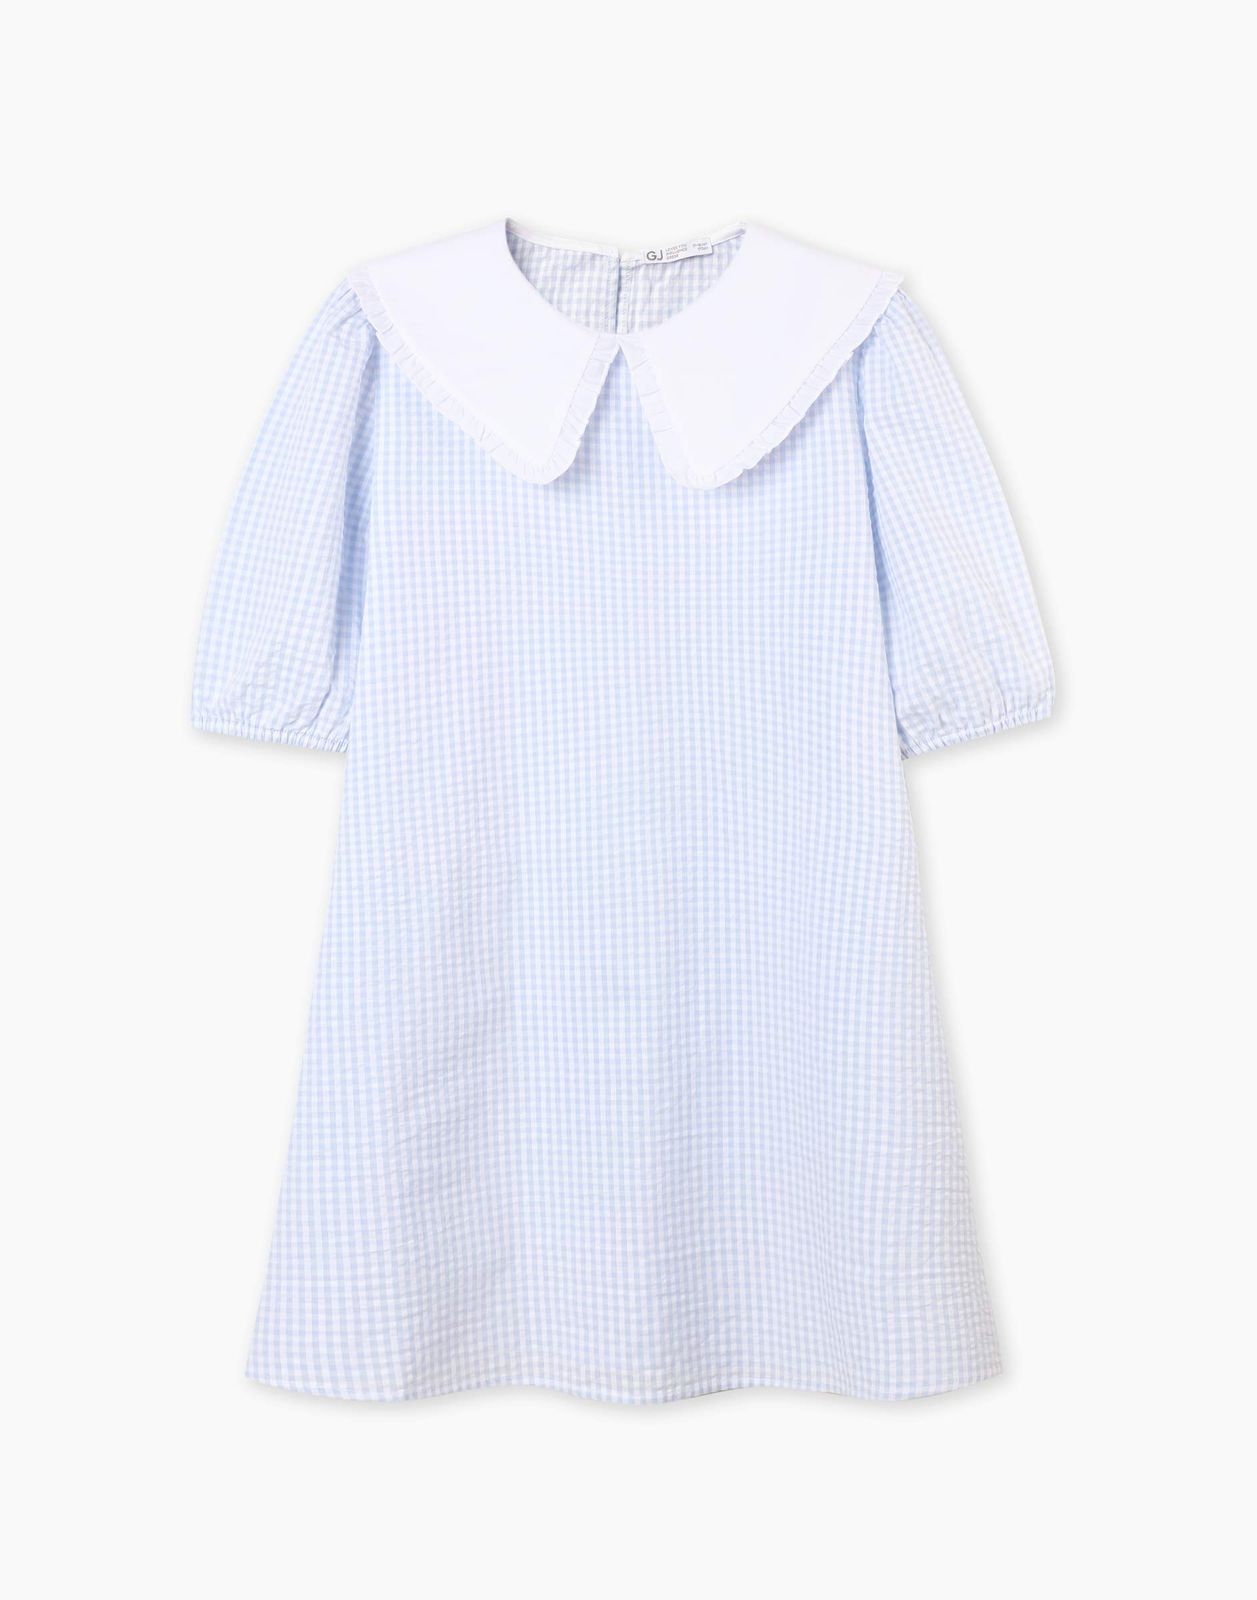 Платье детское Gloria Jeans GDR028214, голубой/белый, 170